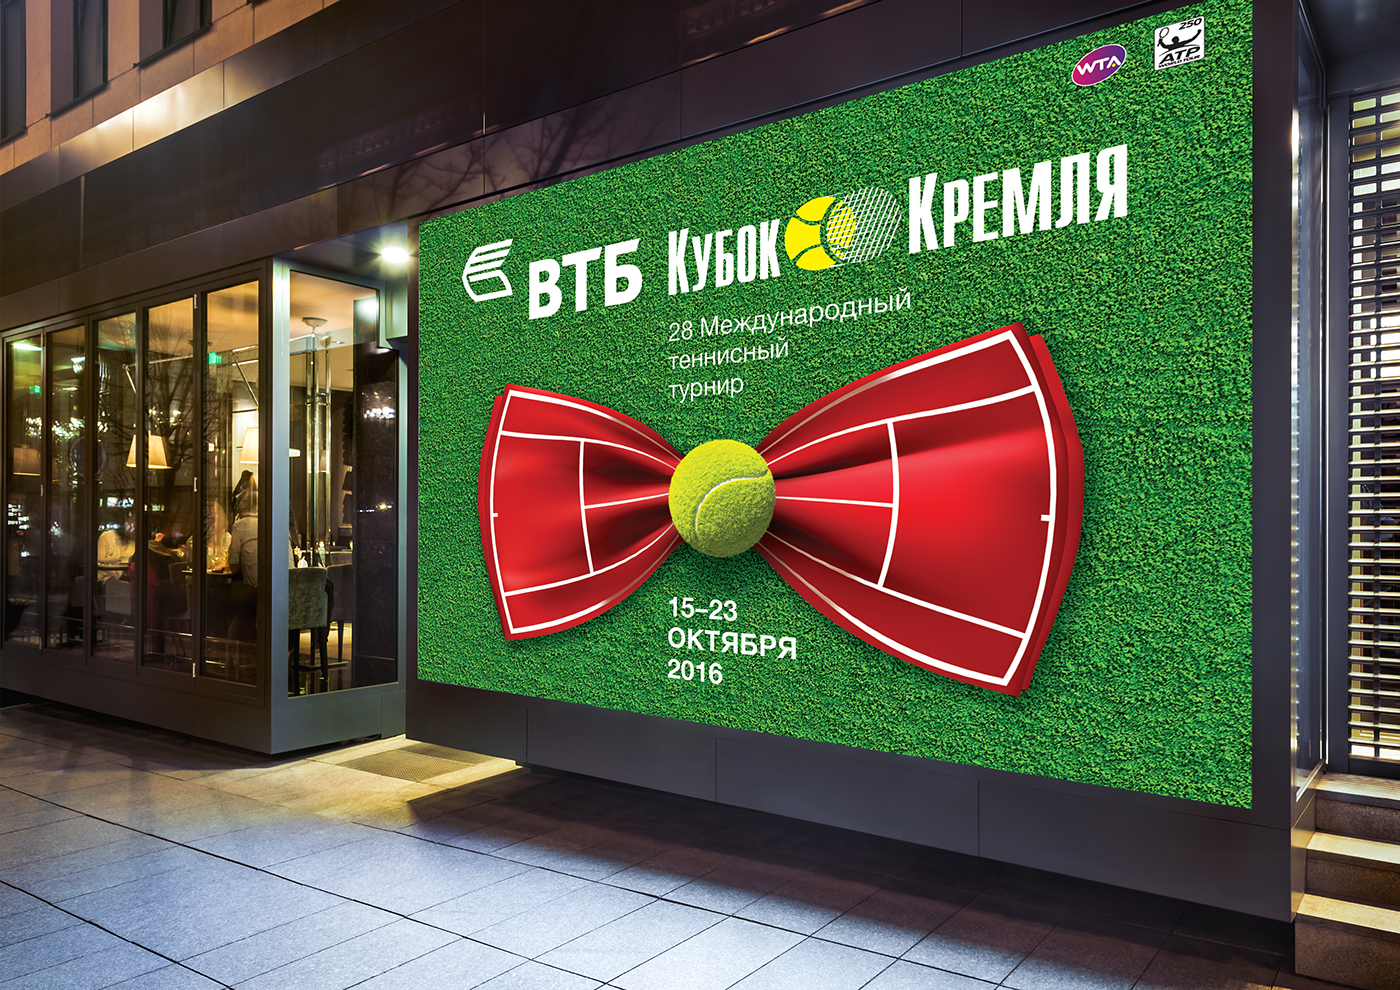 cup tennis Kremlin sport Racket court ball bow tie Tournament